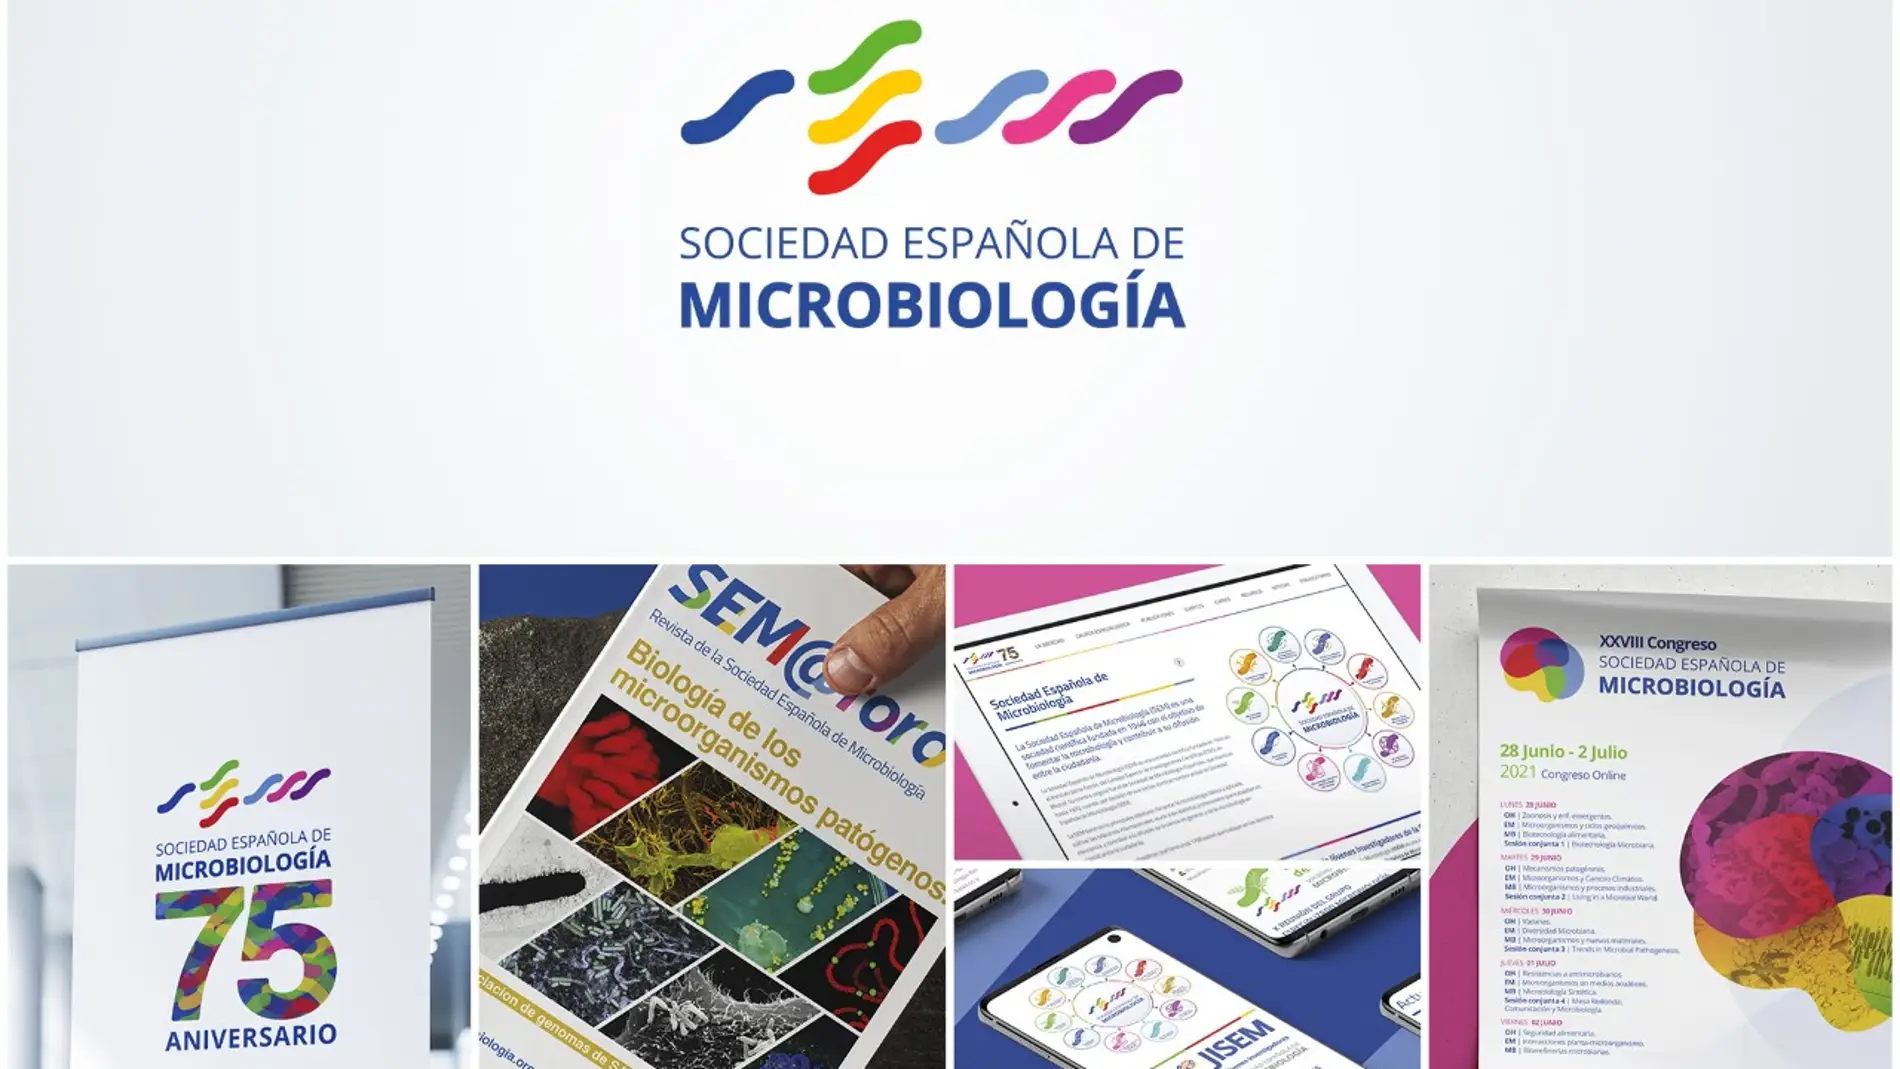 Retrazos rediseñará íntegramente la identidad Corporativa de la Sociedad Española de Microbiología